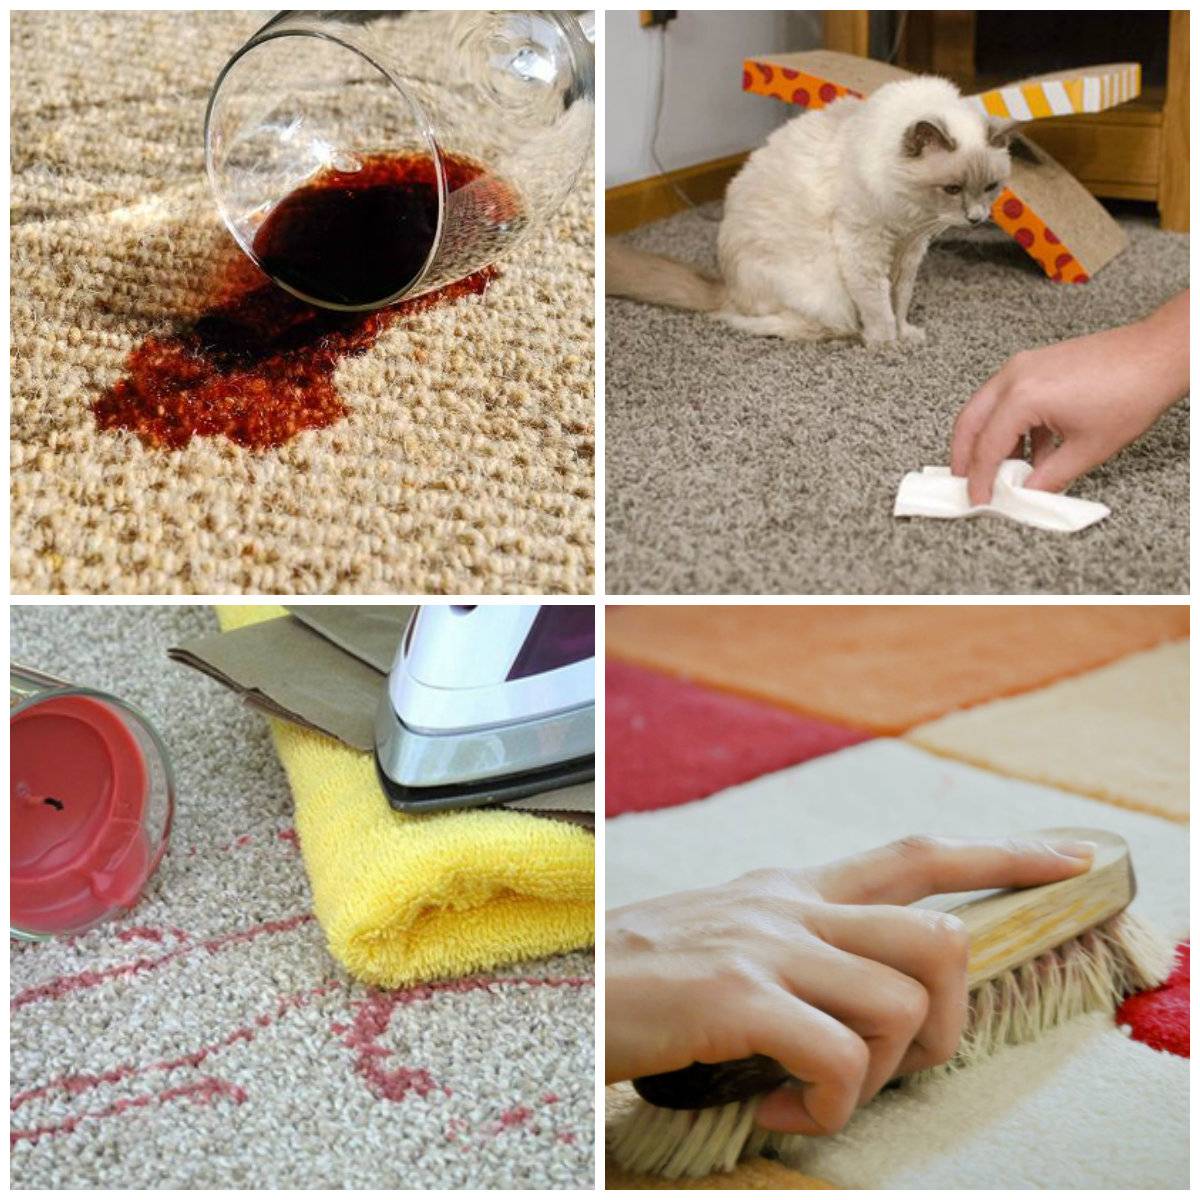 Узнайте, как избавиться от запаха собачьей мочи в квартире, на ковре и диване